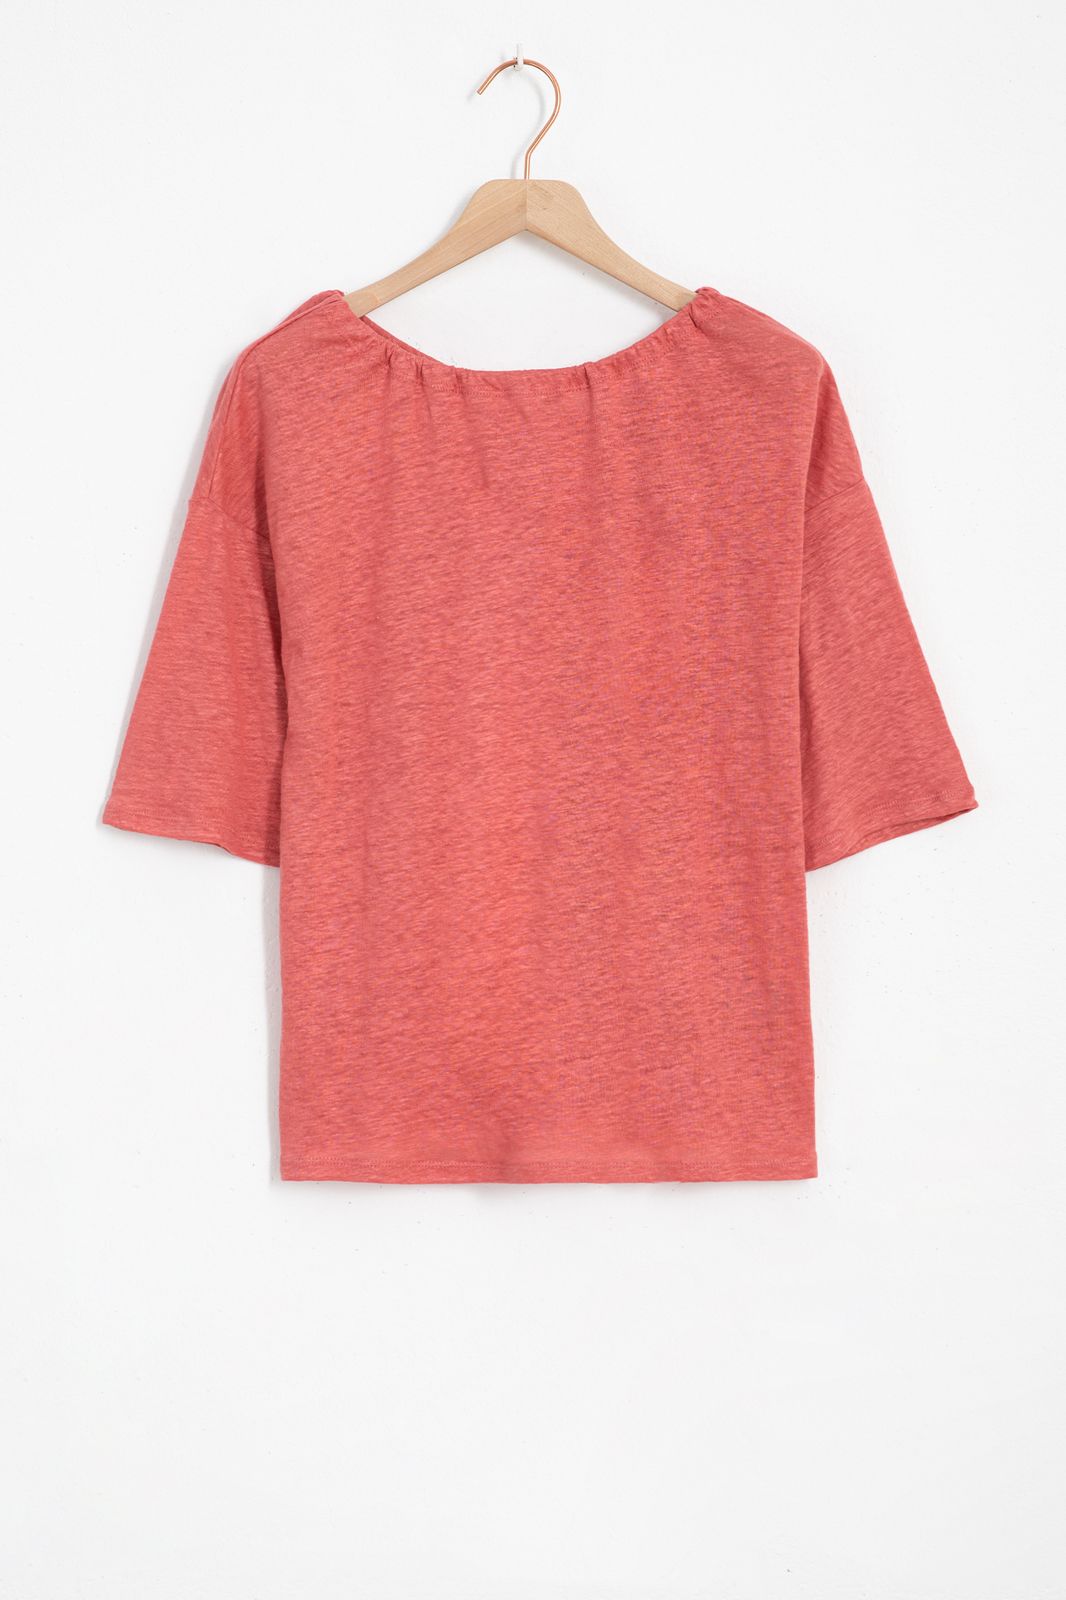 Niet meer geldig moeilijk tevreden te krijgen ergens Roze linnen t-shirt met strik - Dames | Sissy-Boy